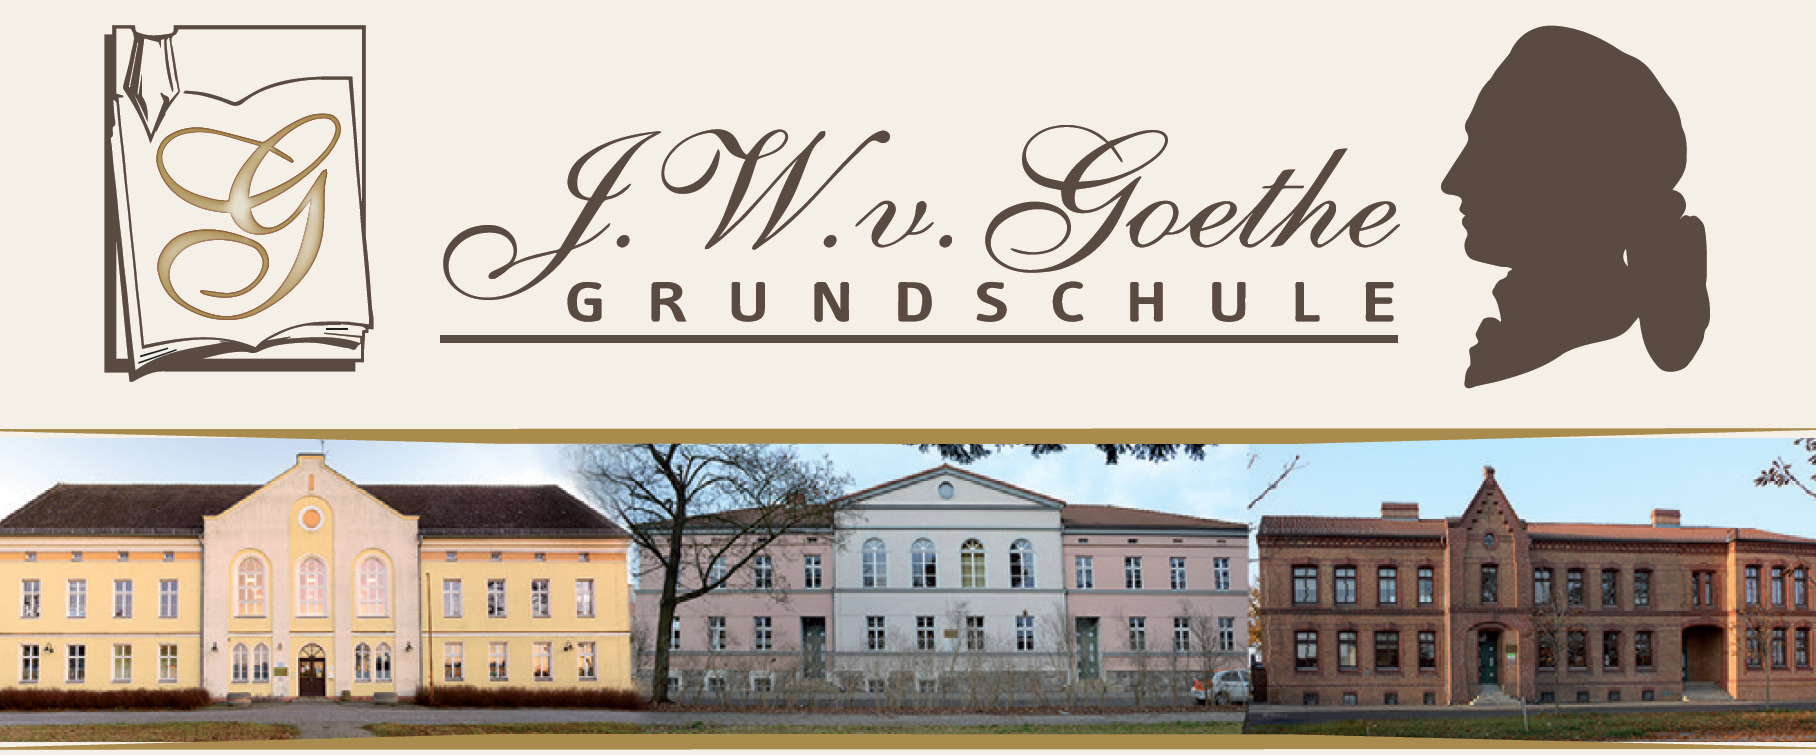 Grundschule Johann Wolfgang von Goethe